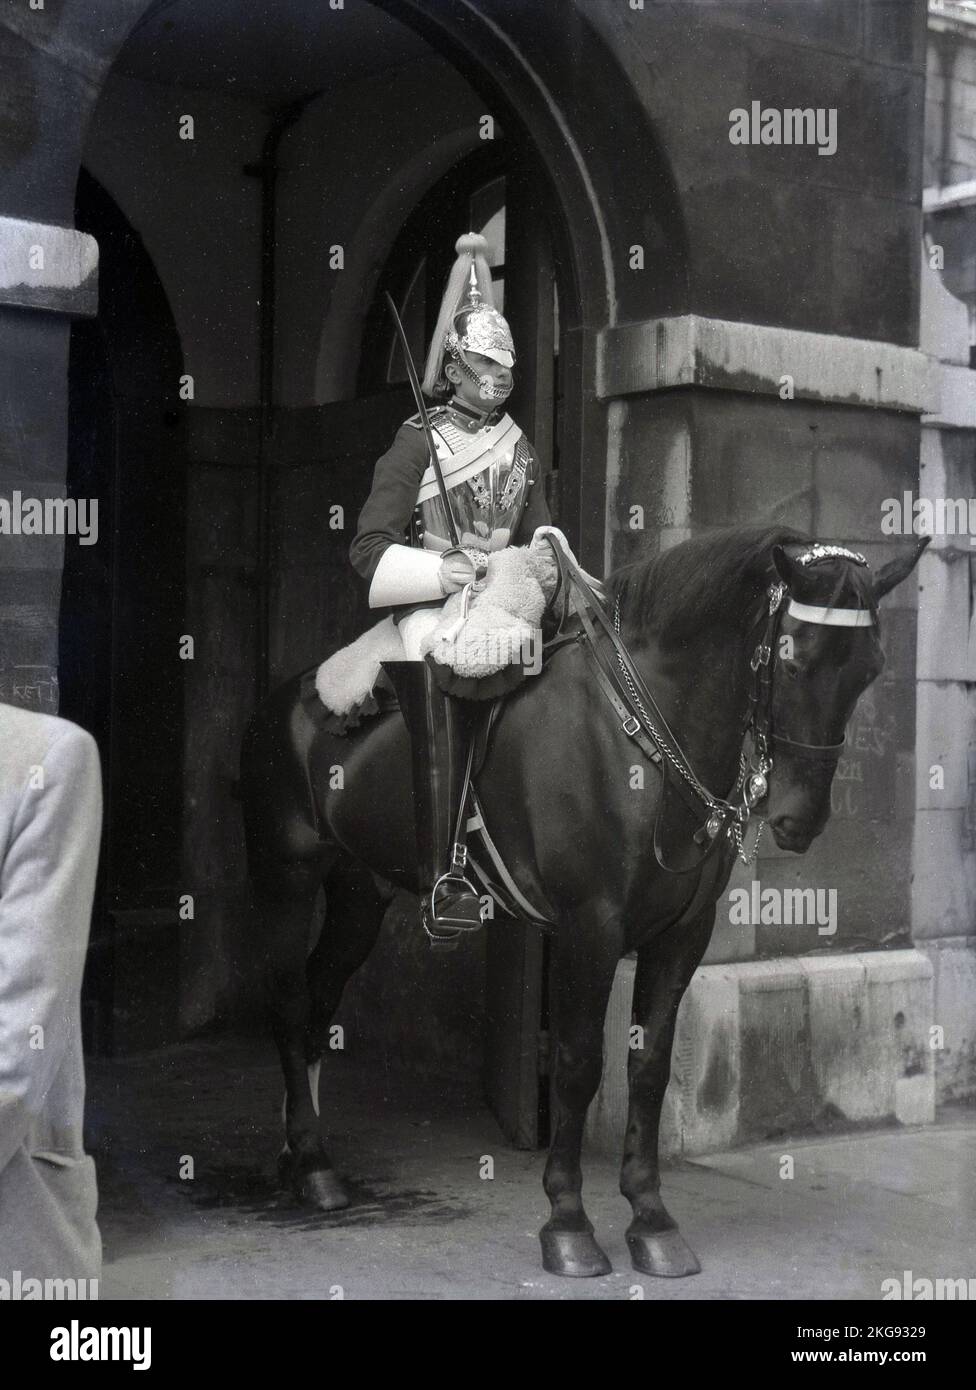 1950s, historique, un cheval de garde monté à l'entrée cérémonielle de St James et Buckingham Palace, le siège de Household Cavalry Mounted Regiment, Westminster, Londres, Angleterre, Royaume-Uni. Banque D'Images